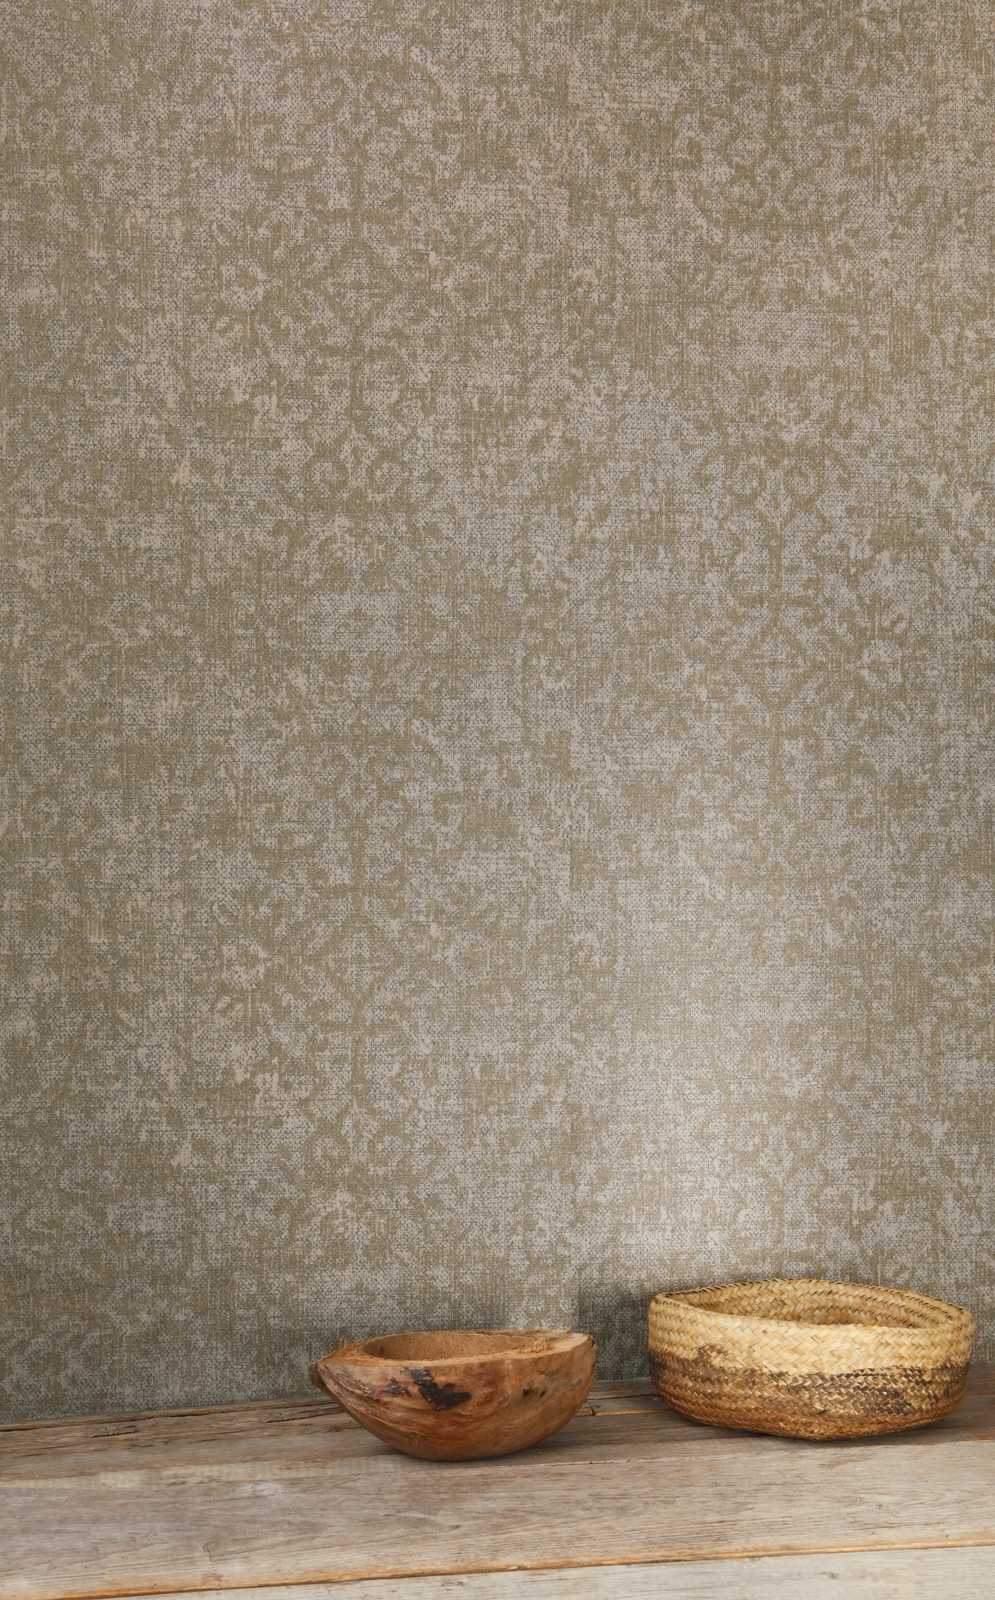             Papier peint ethnique gris-brun avec brocart aspect textile
        